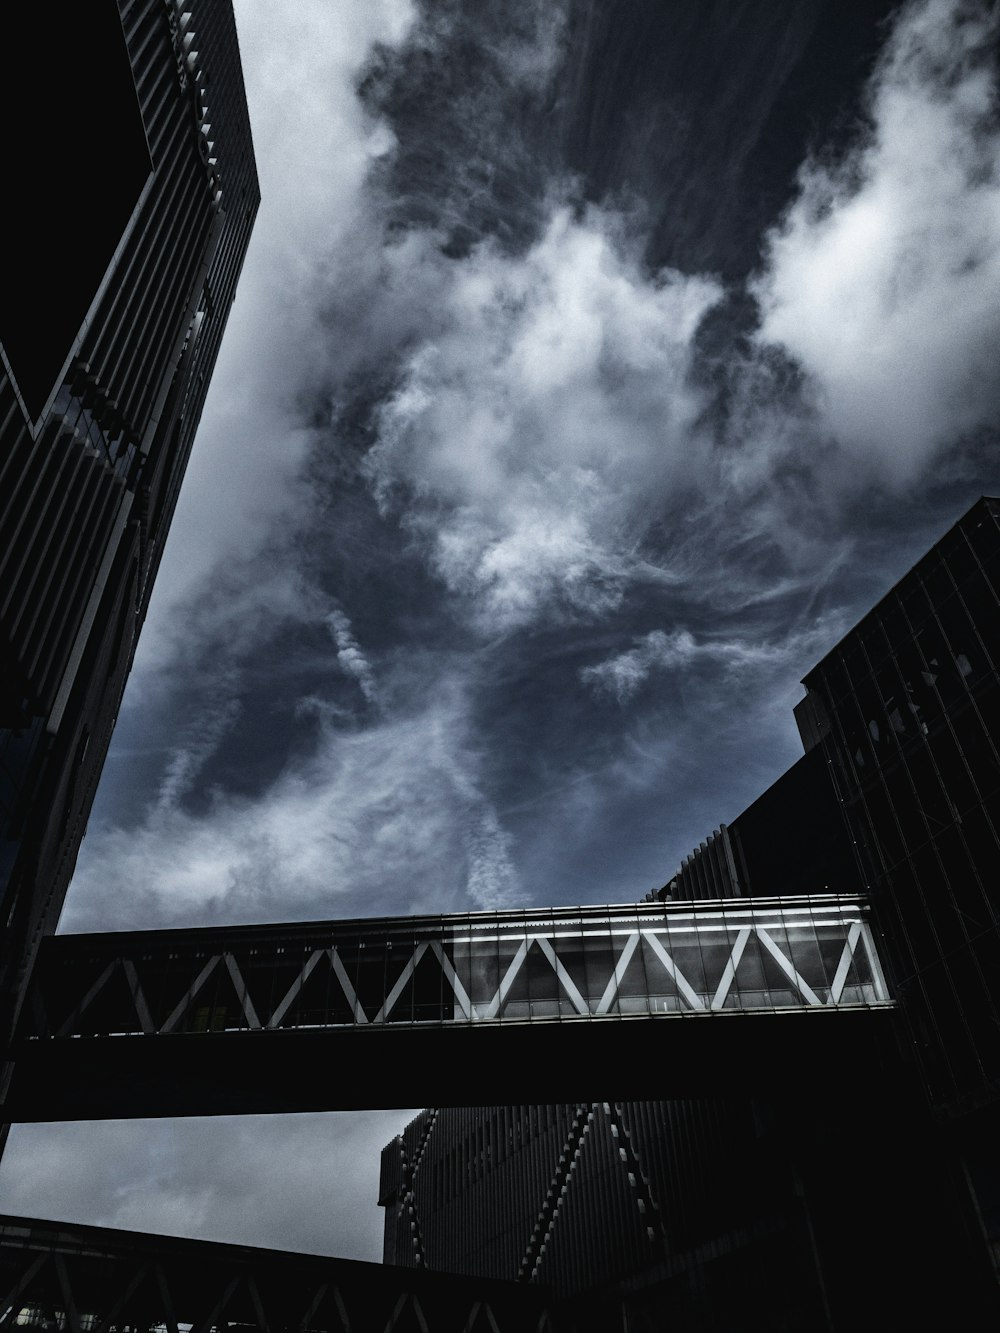 曇り空下の2つの建物間の橋のグレースケール写真